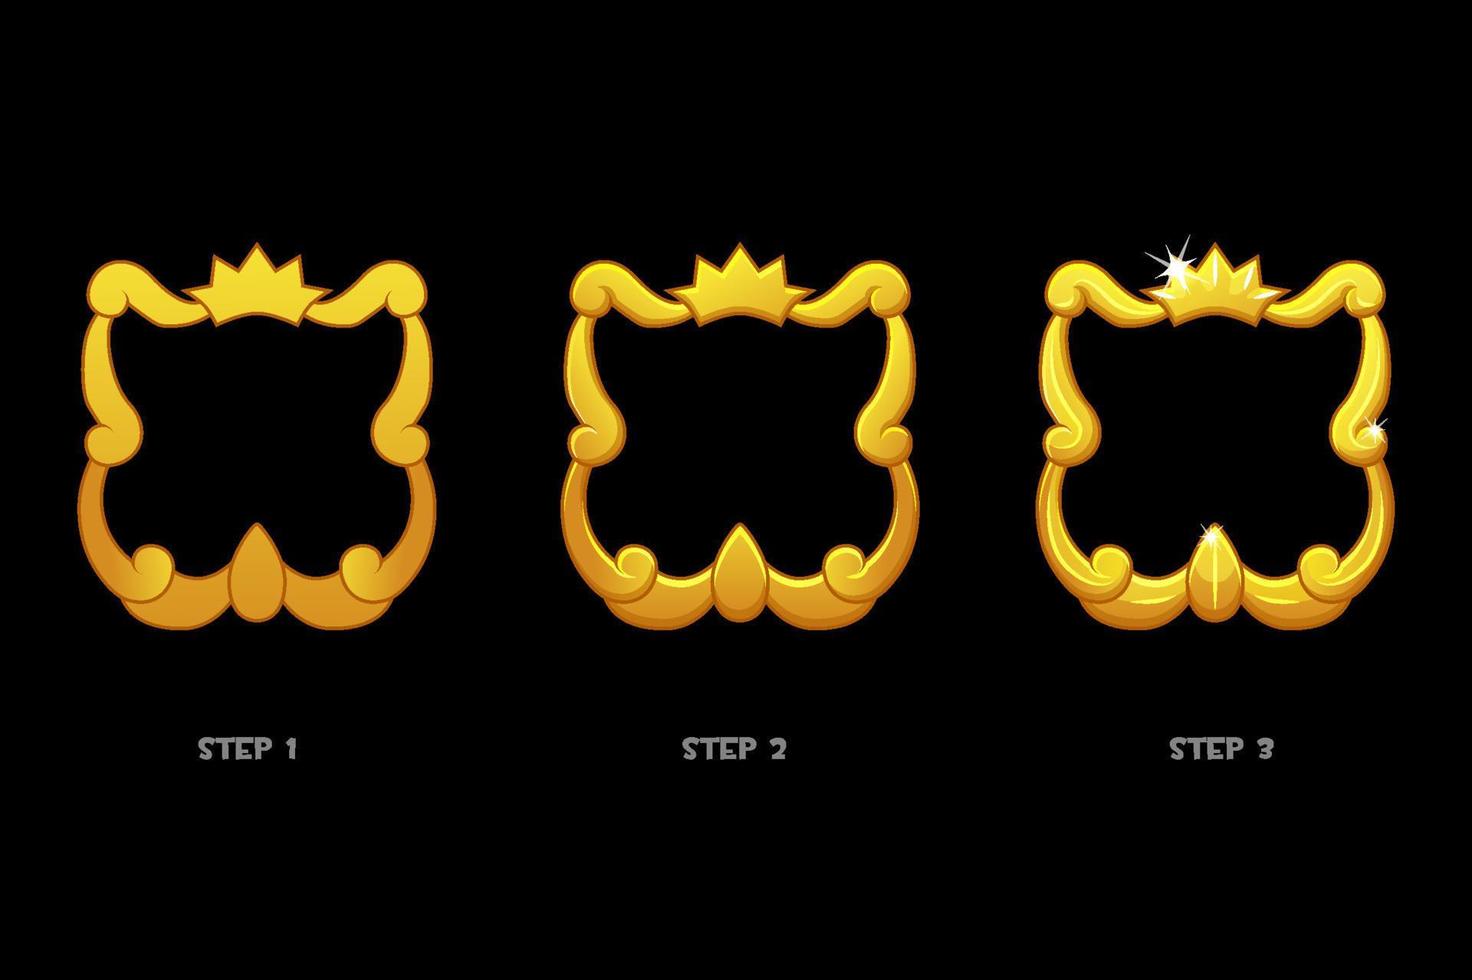 modèles de cadre doré avec couronne, avatar vierge 3 étapes de dessin pour le jeu. vecteur